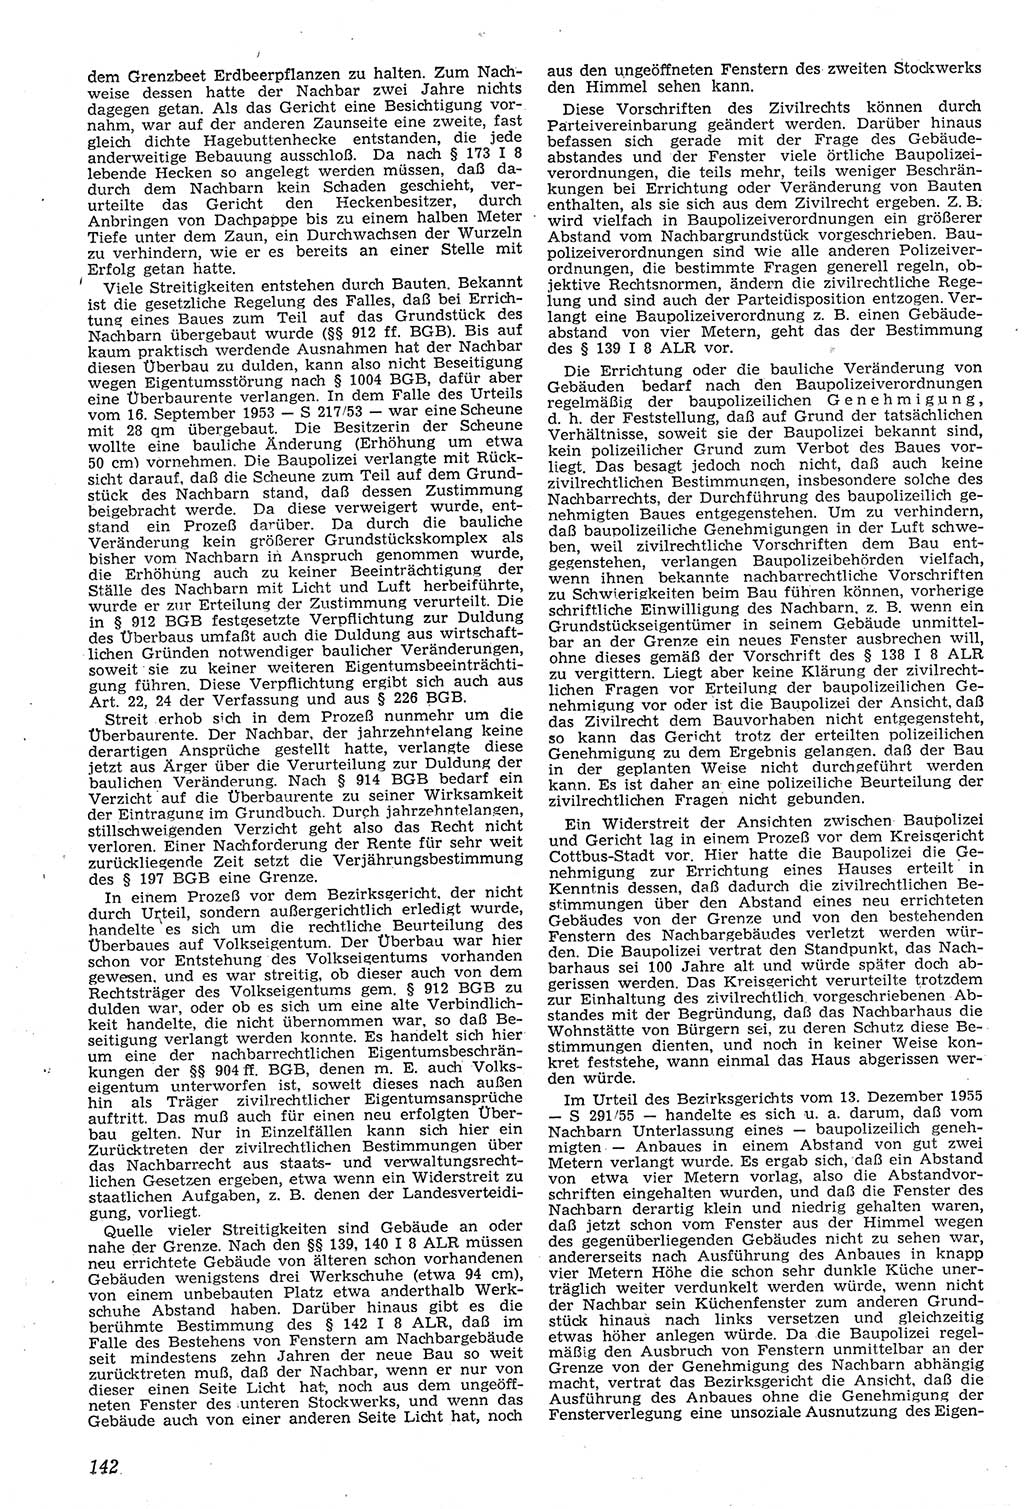 Neue Justiz (NJ), Zeitschrift für Recht und Rechtswissenschaft [Deutsche Demokratische Republik (DDR)], 11. Jahrgang 1957, Seite 142 (NJ DDR 1957, S. 142)